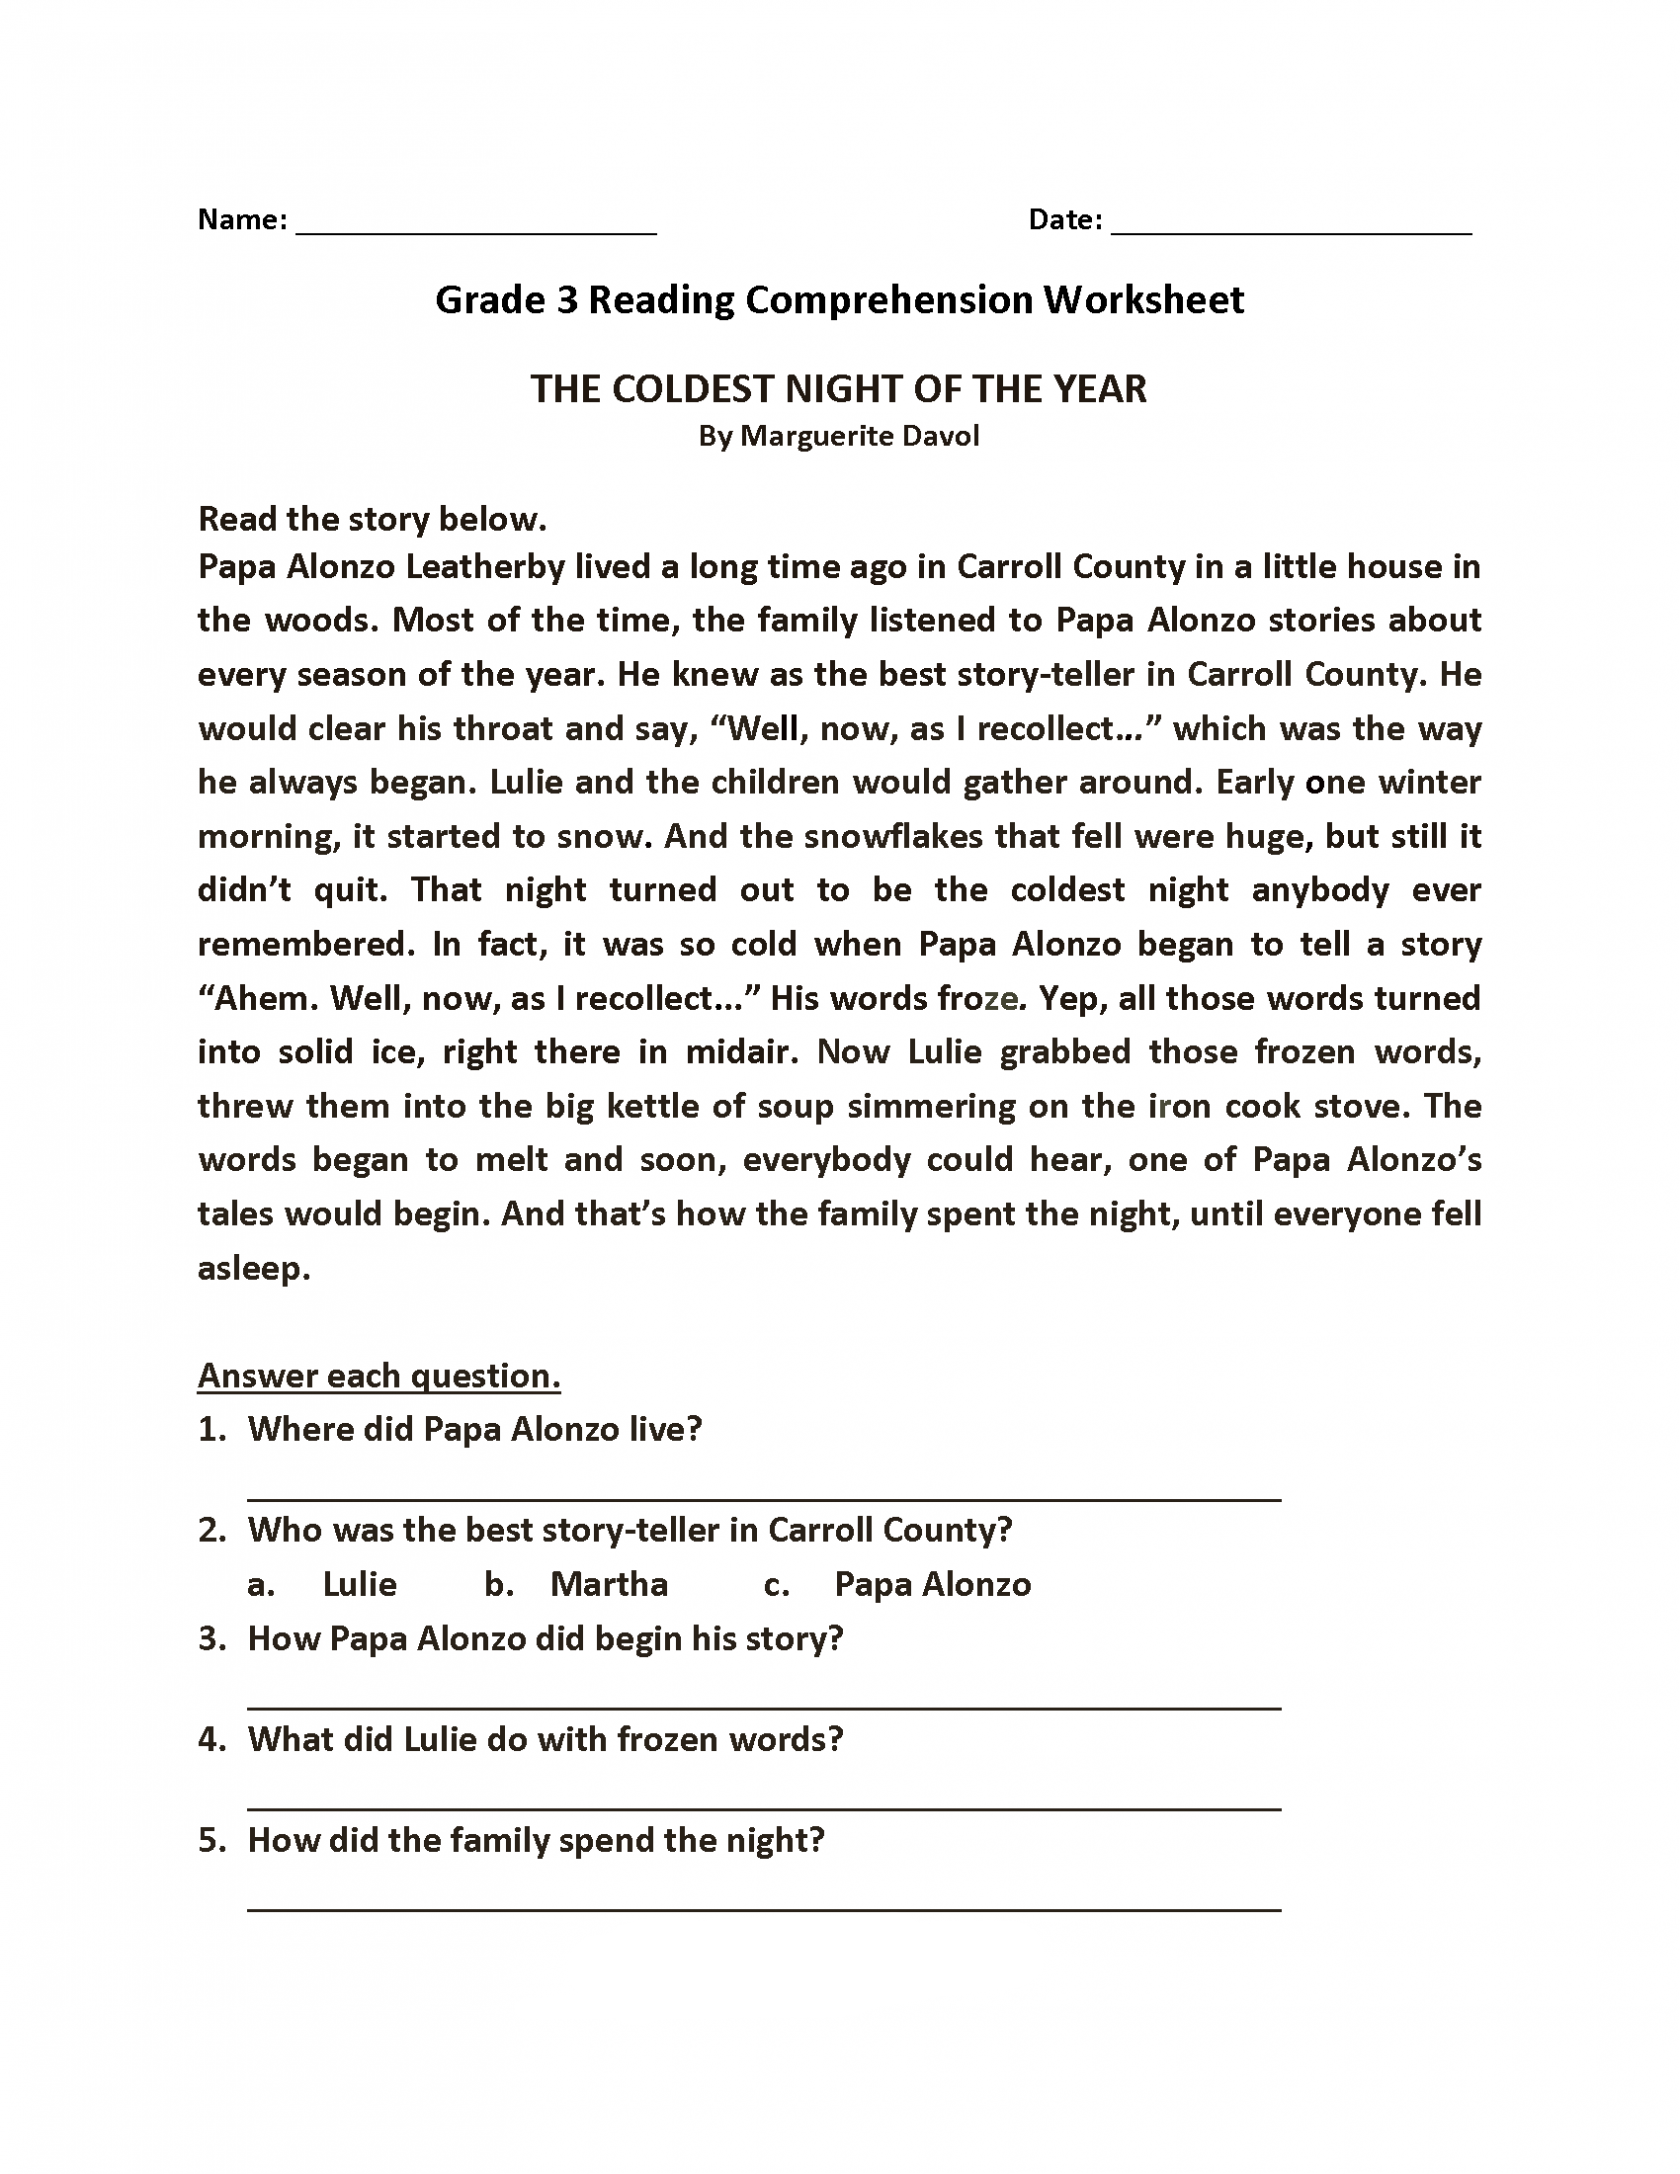 worksheet for grade 3 reading